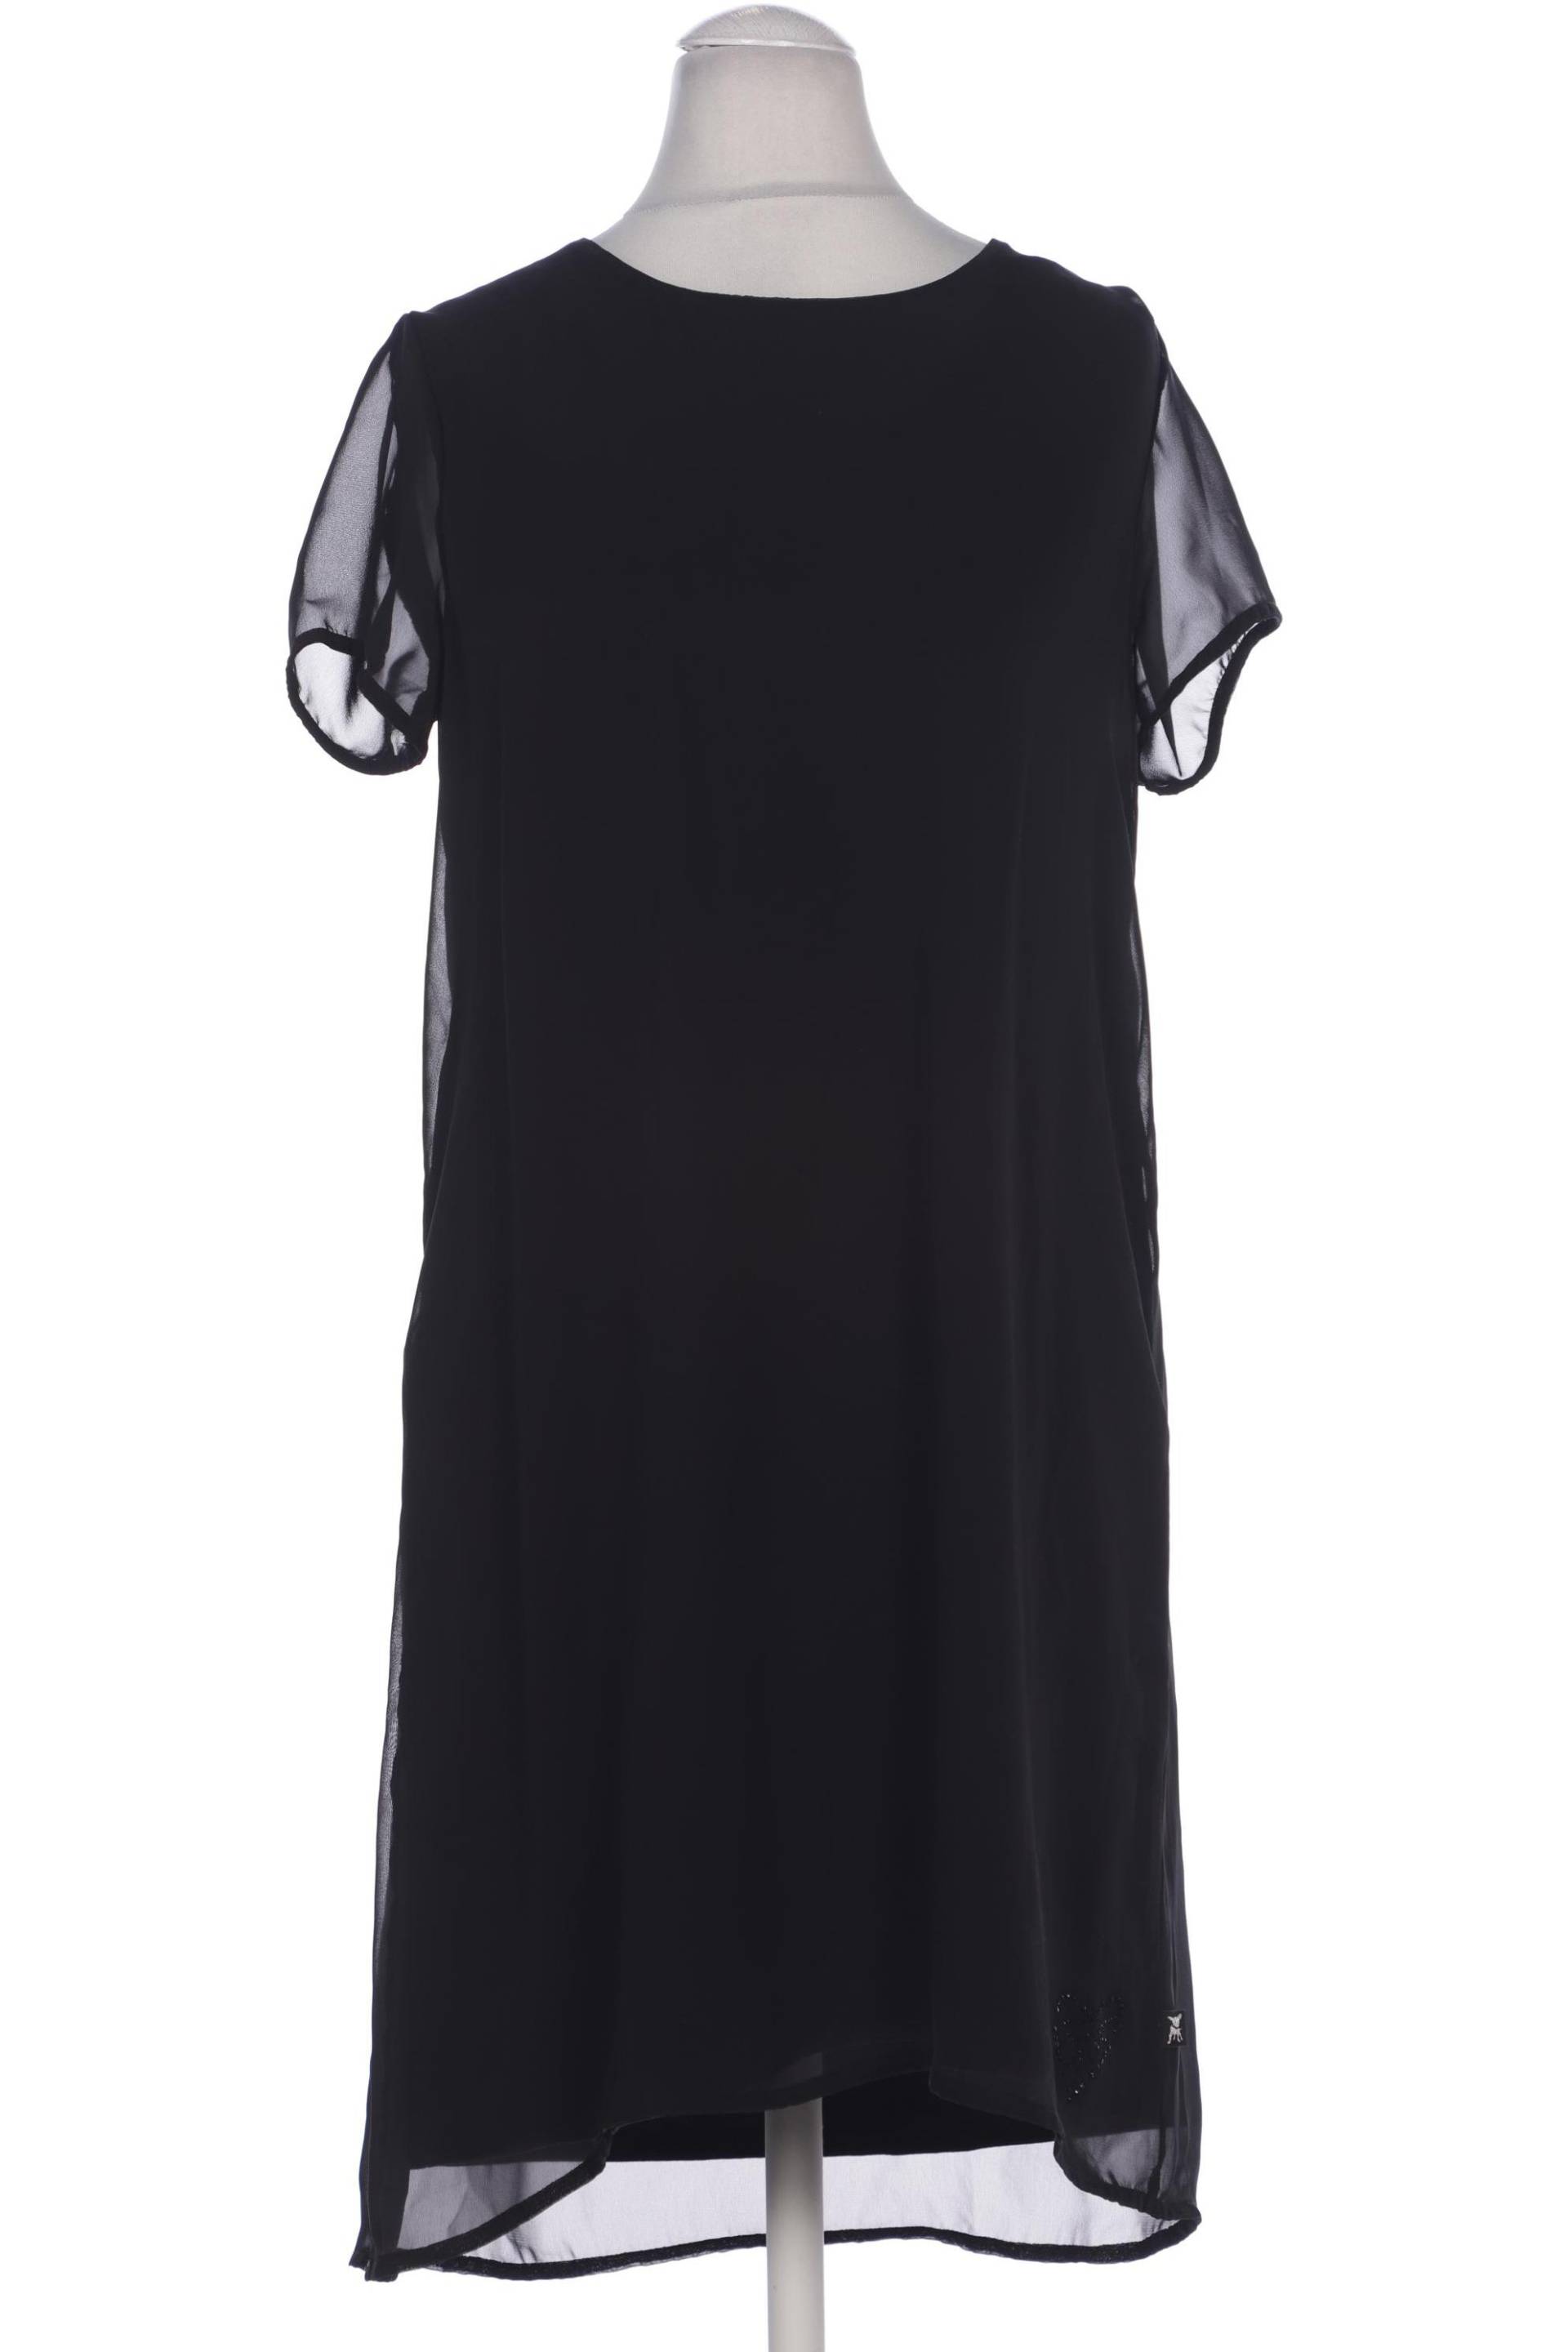 Friedafreddies Damen Kleid, schwarz, Gr. 36 von FRIEDAFREDDIES